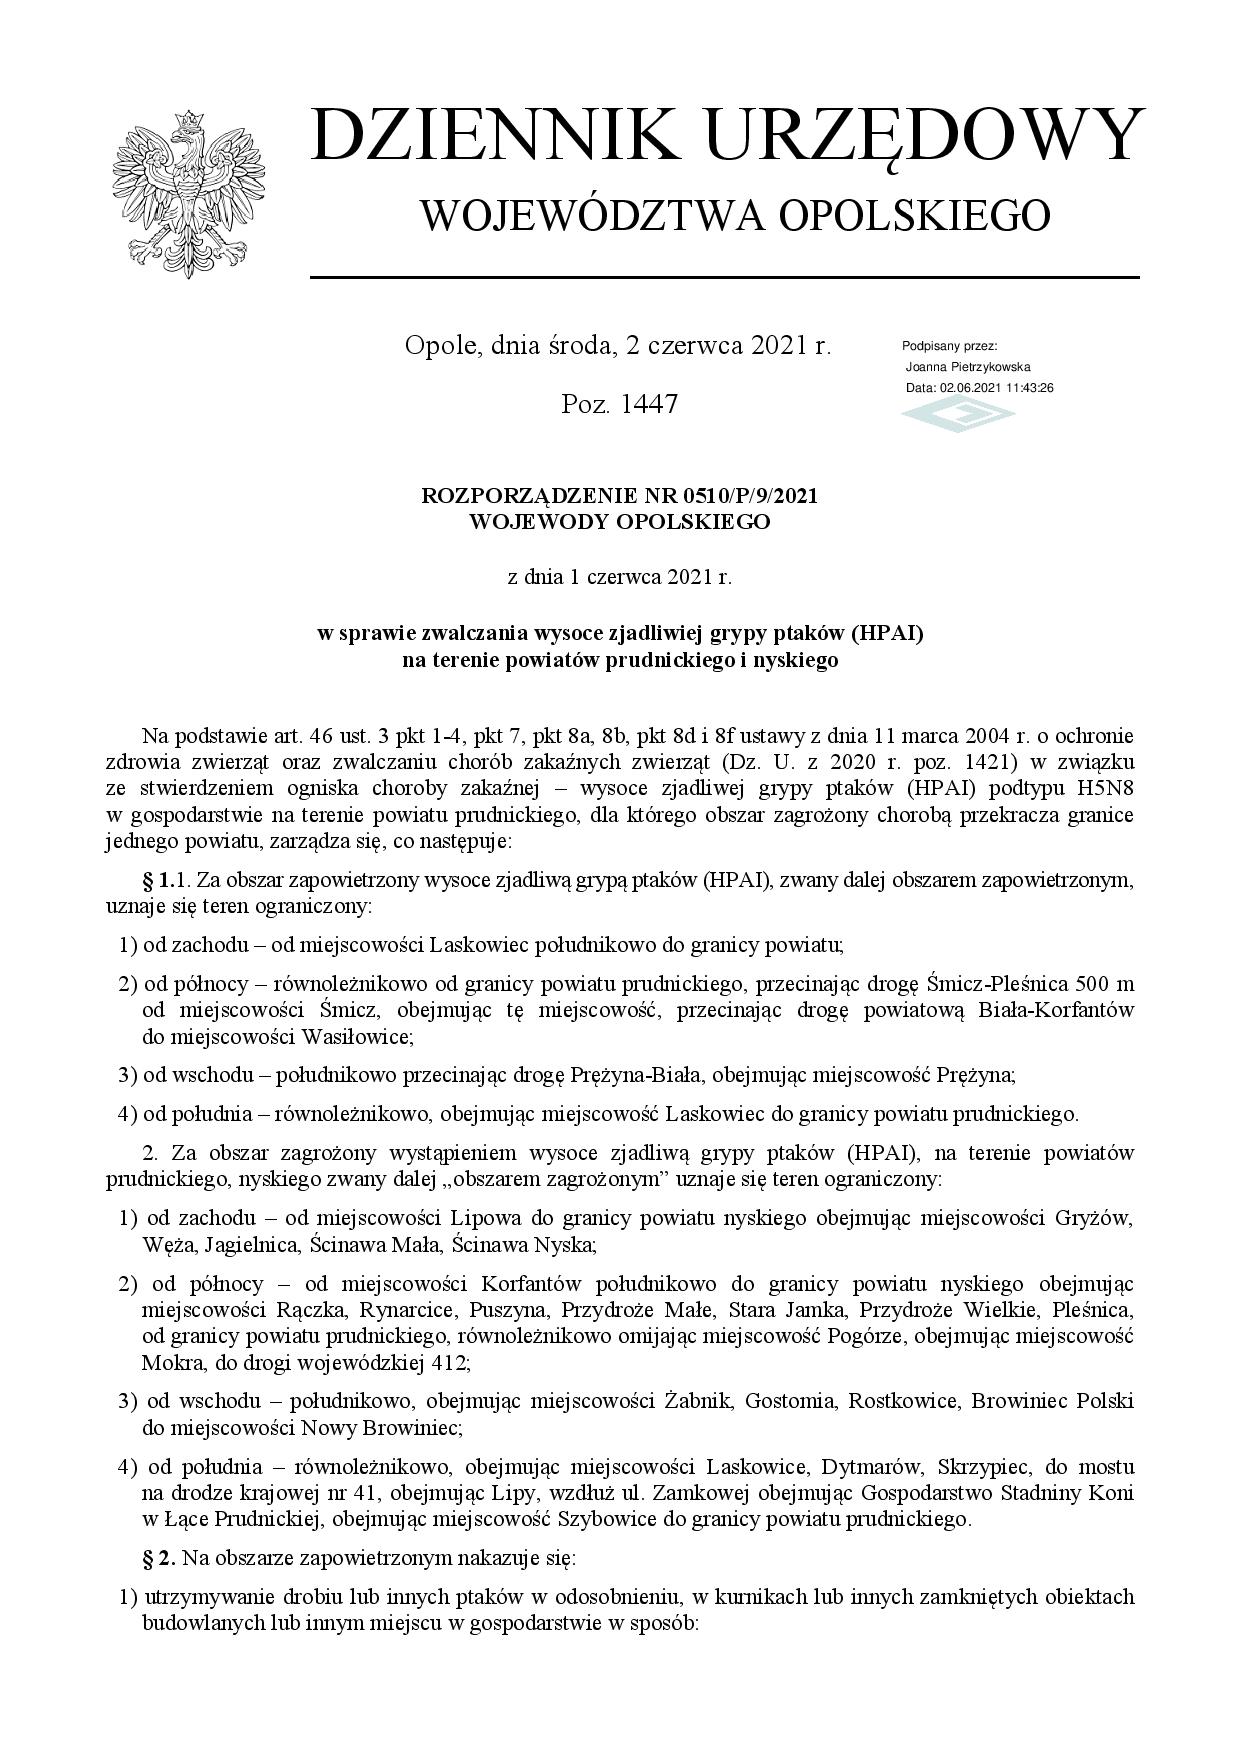 Rozporządzenie Wojewody Opolskiego w sprawie zwalczania wysoce zjadliwiej grypy ptaków